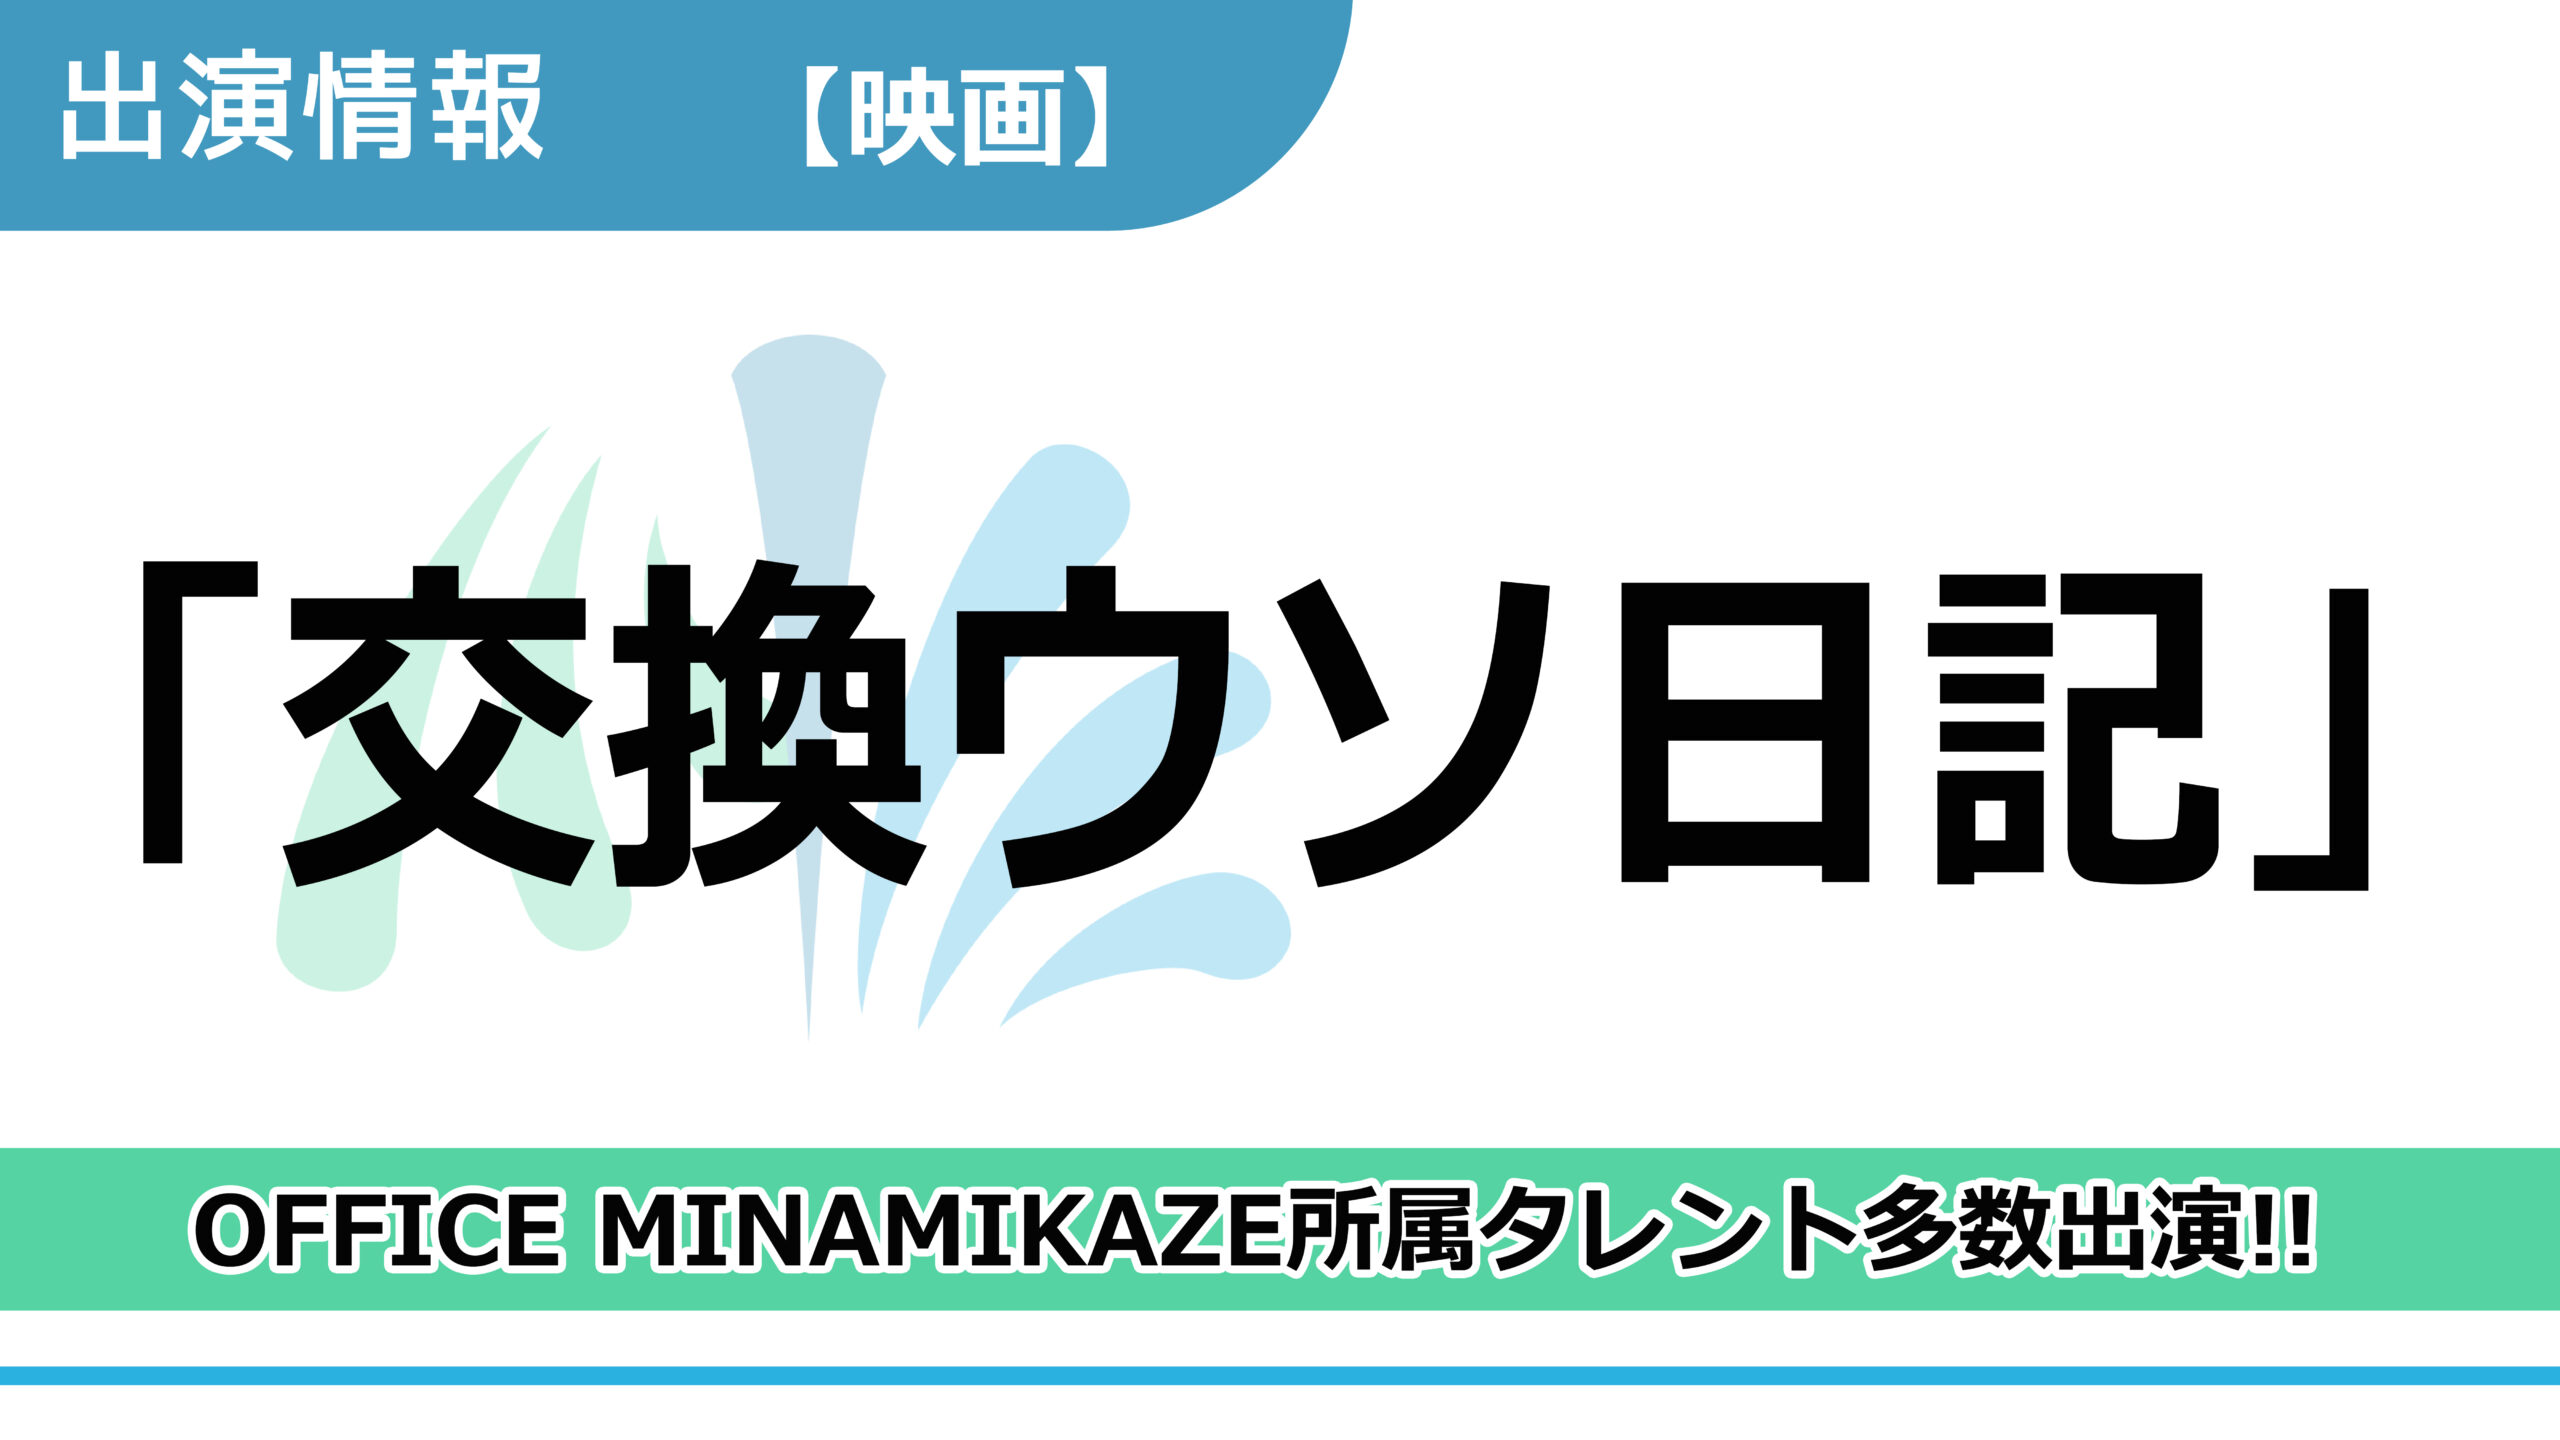 【出演情報】OFFICE MINAMIKAZE所属タレント多数出演 / 映画「交換ウソ日記」